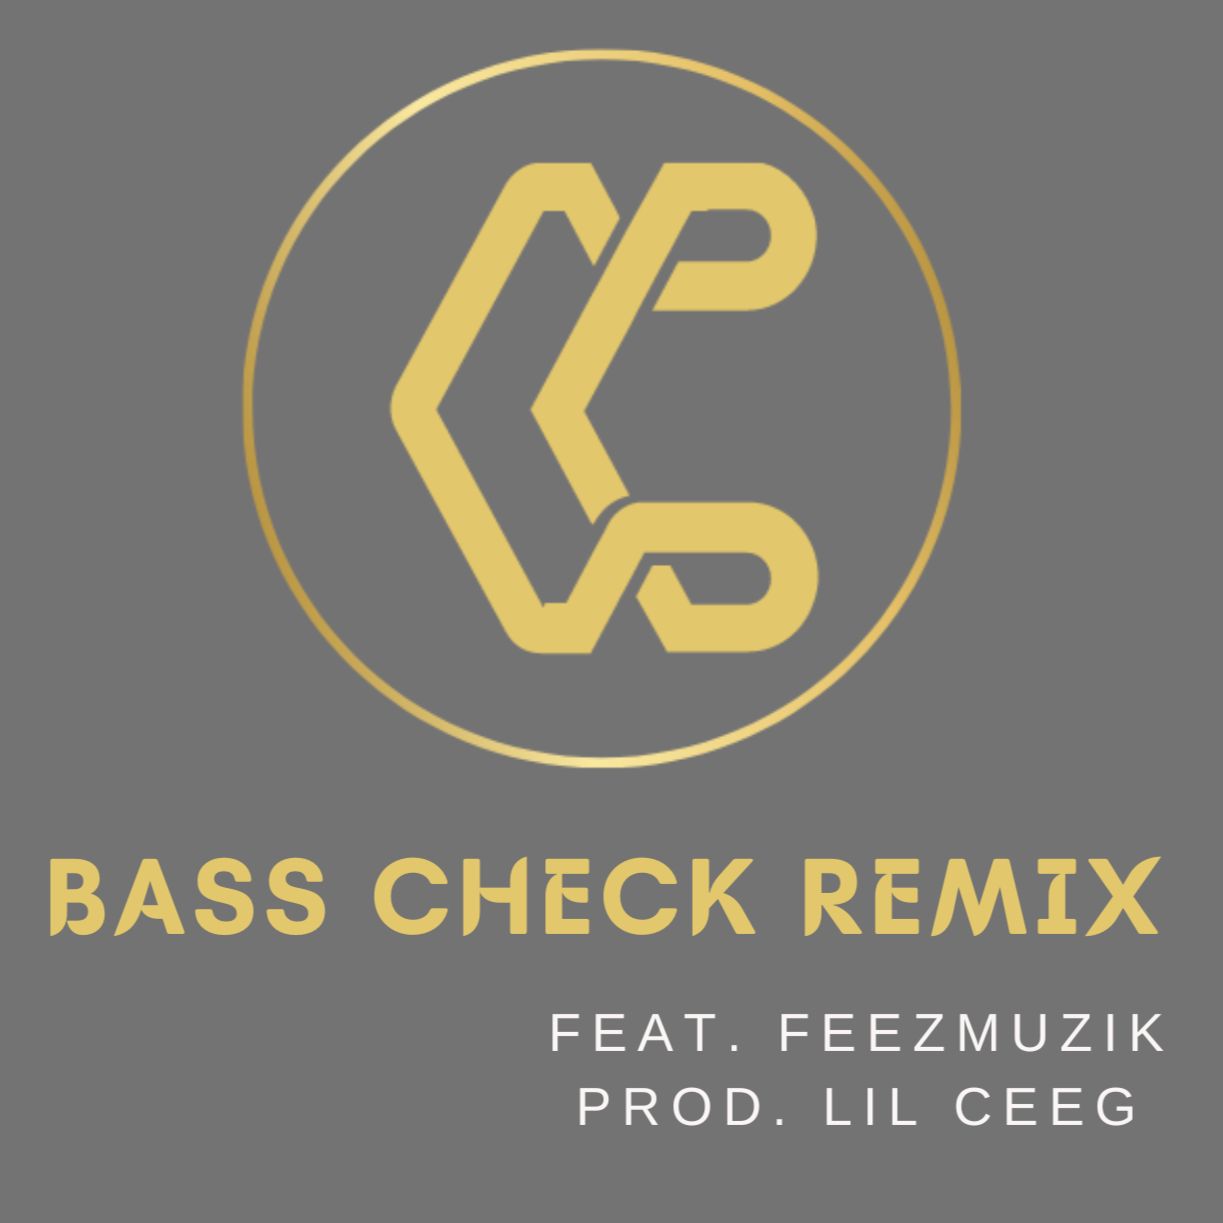 Descarca Bass Check Remix (Feat. FeezMuzik) [Prod. Lil Ceeg]